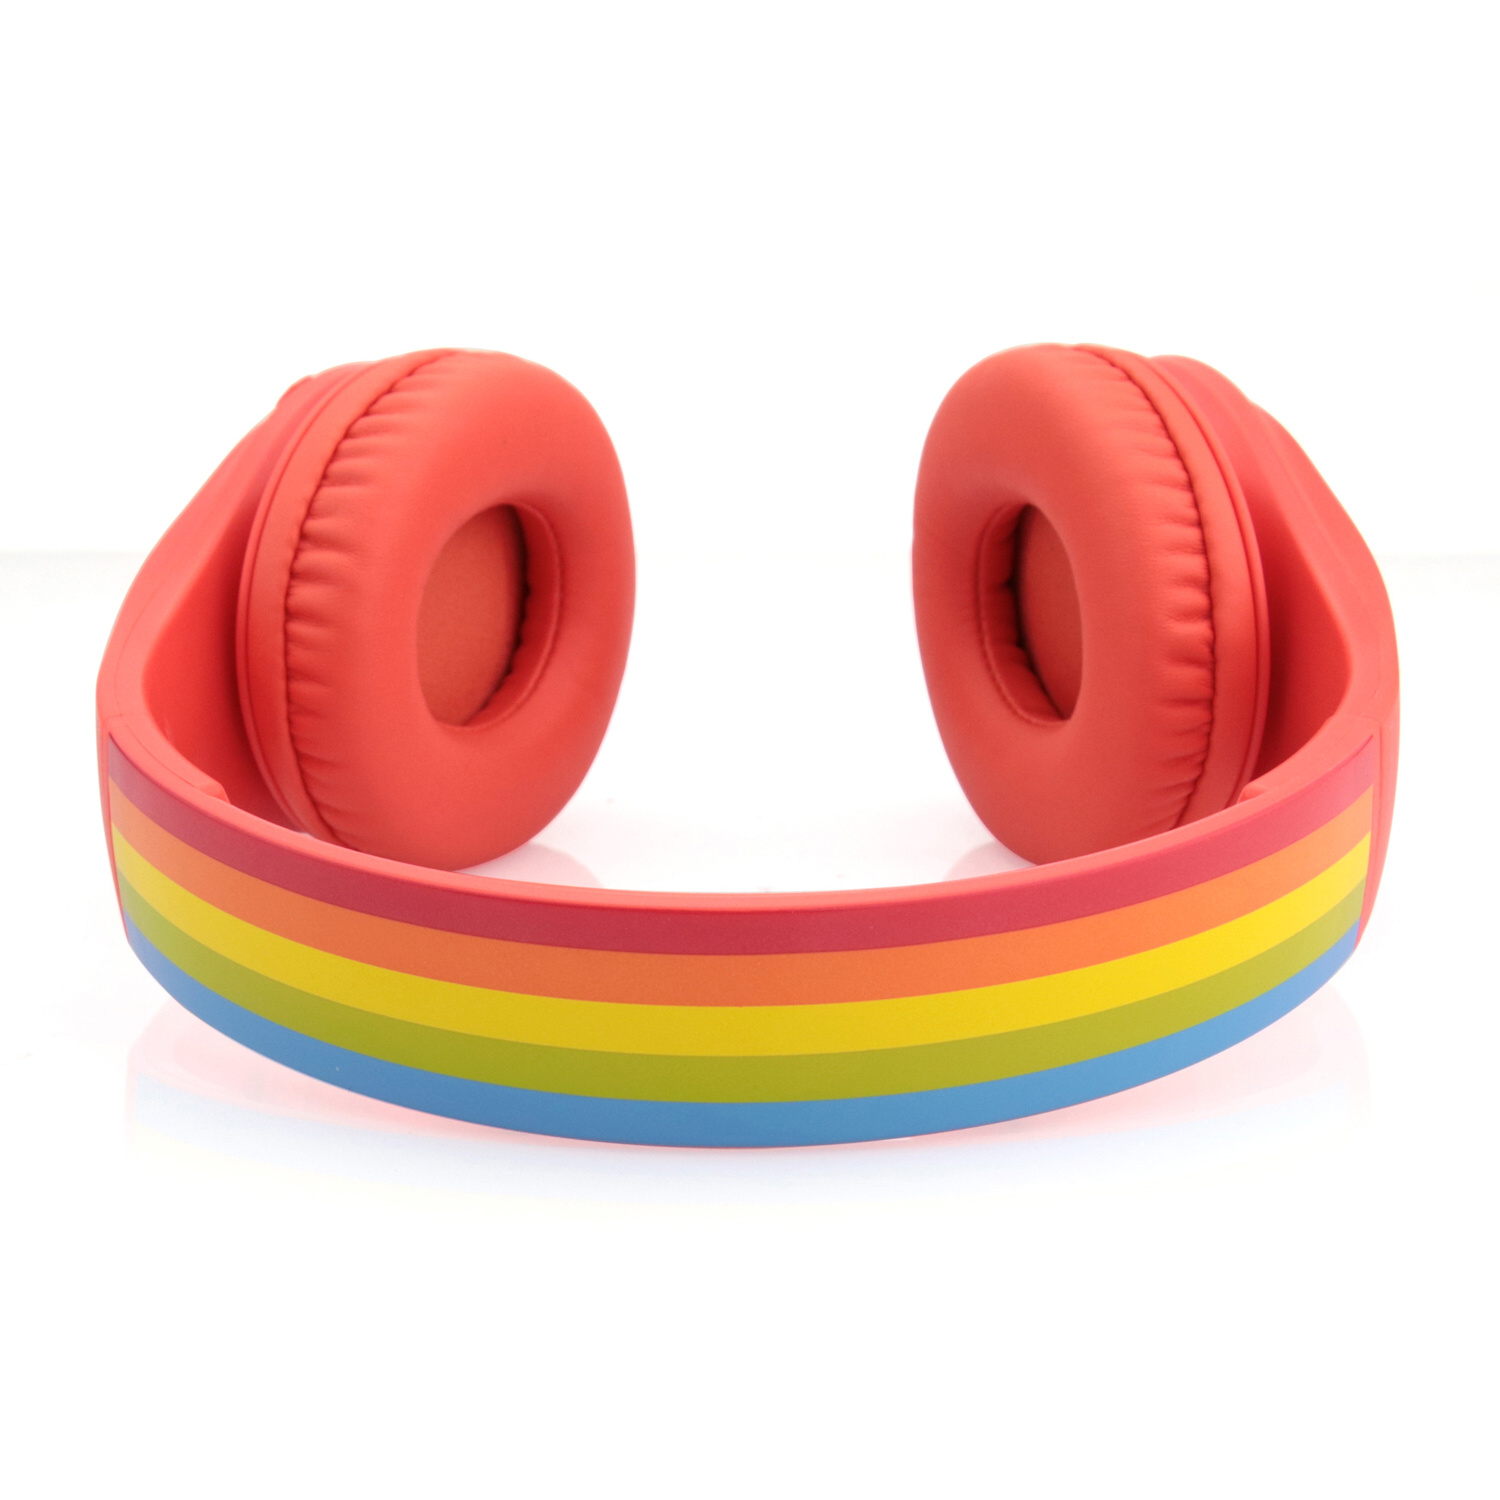 GOGEN DECKO R, SLECHY Rot Bluetooth DUO Over-ear Kopfhörer